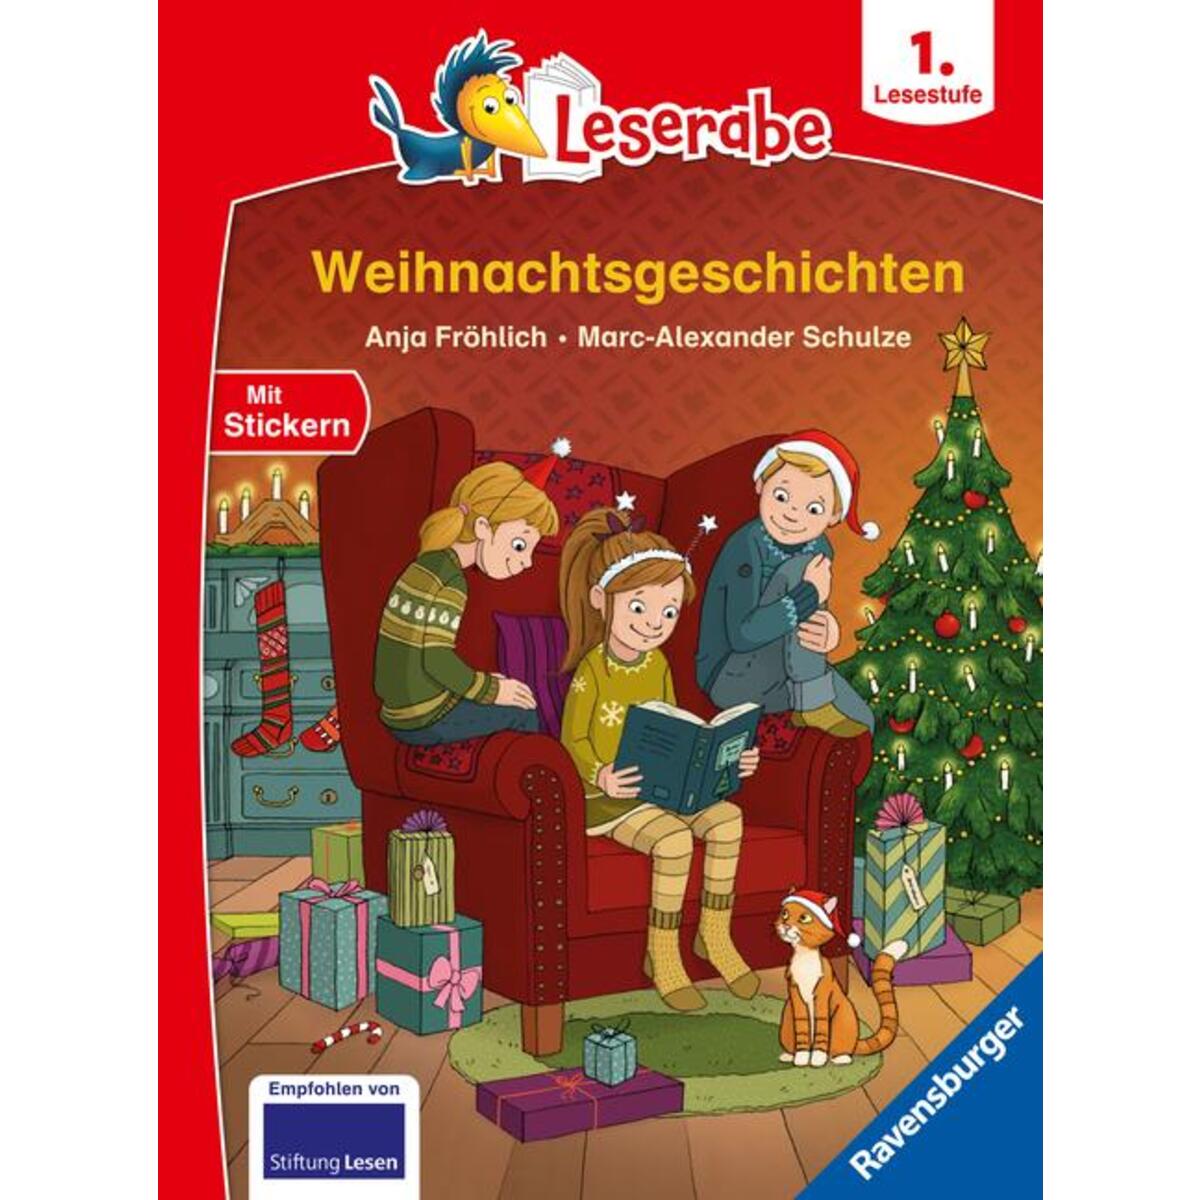 Weihnachtsgeschichten - Leserabe ab 1. Klasse - Erstlesebuch für Kinder ab 6 Jah... von Ravensburger Verlag